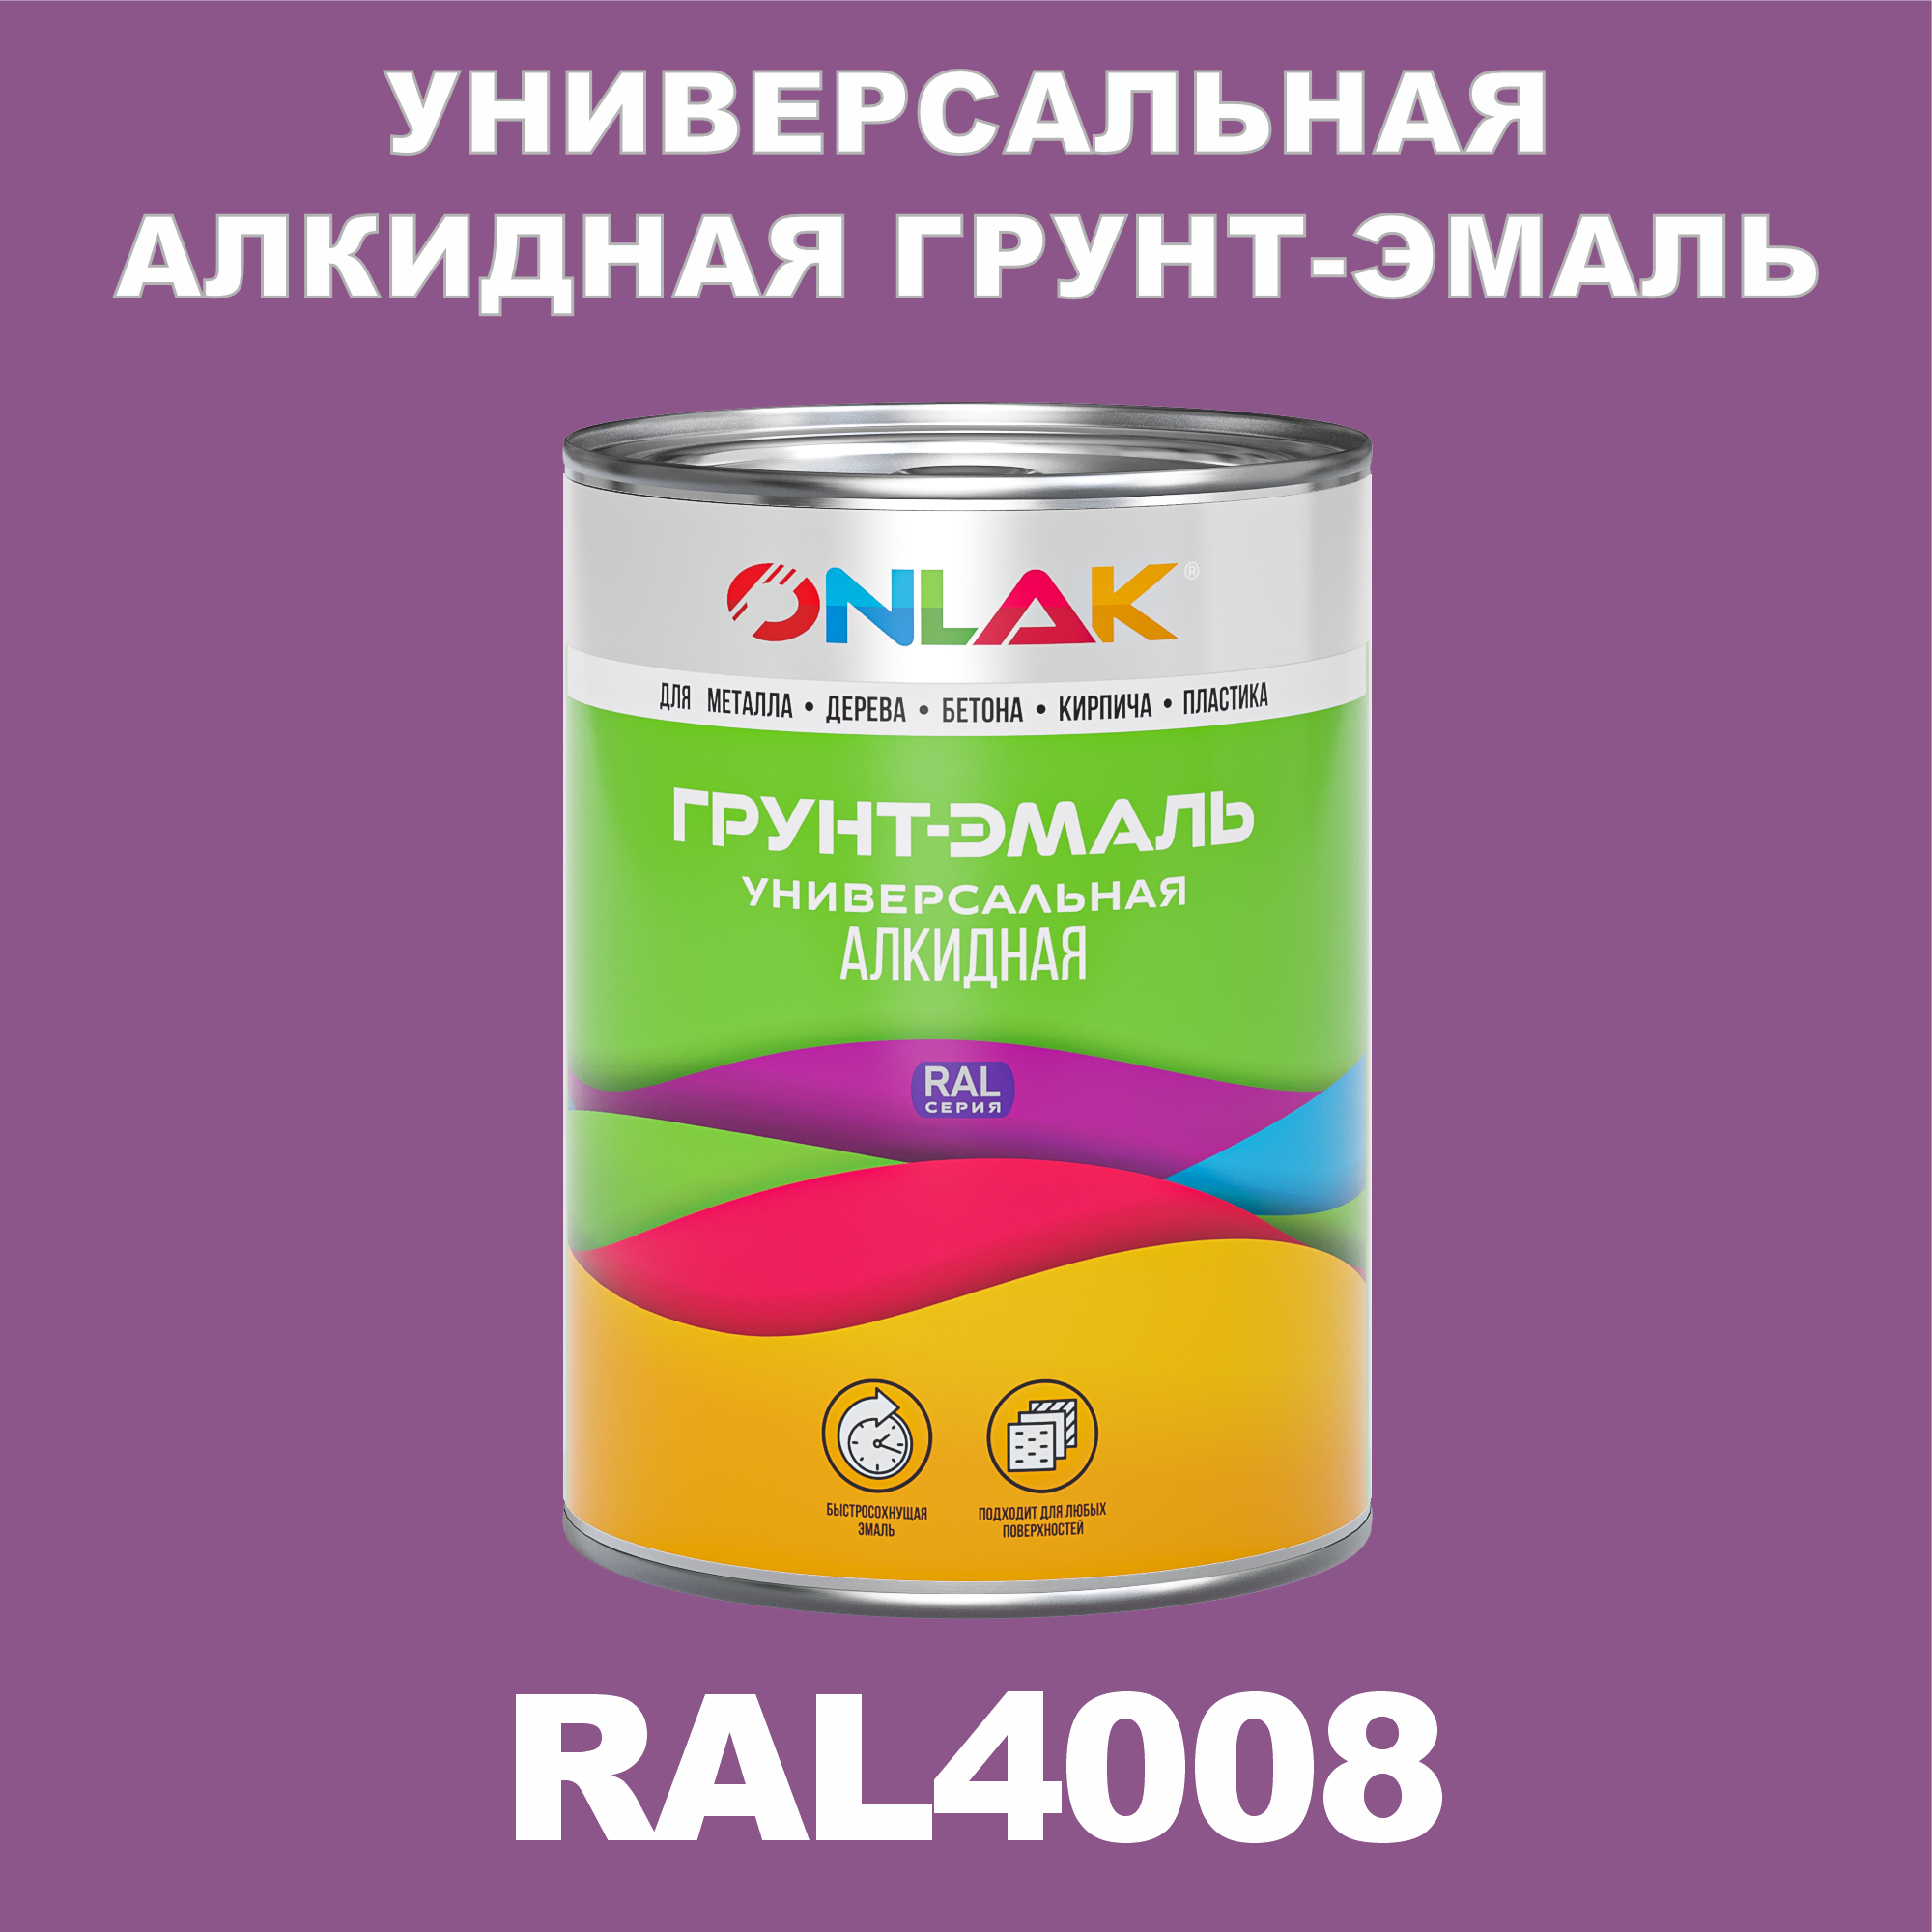 Грунт-эмаль ONLAK 1К RAL4008 антикоррозионная алкидная по металлу по ржавчине 1 кг антикоррозионная грунт эмаль onlak ral 4012 фиолетовый 715 мл